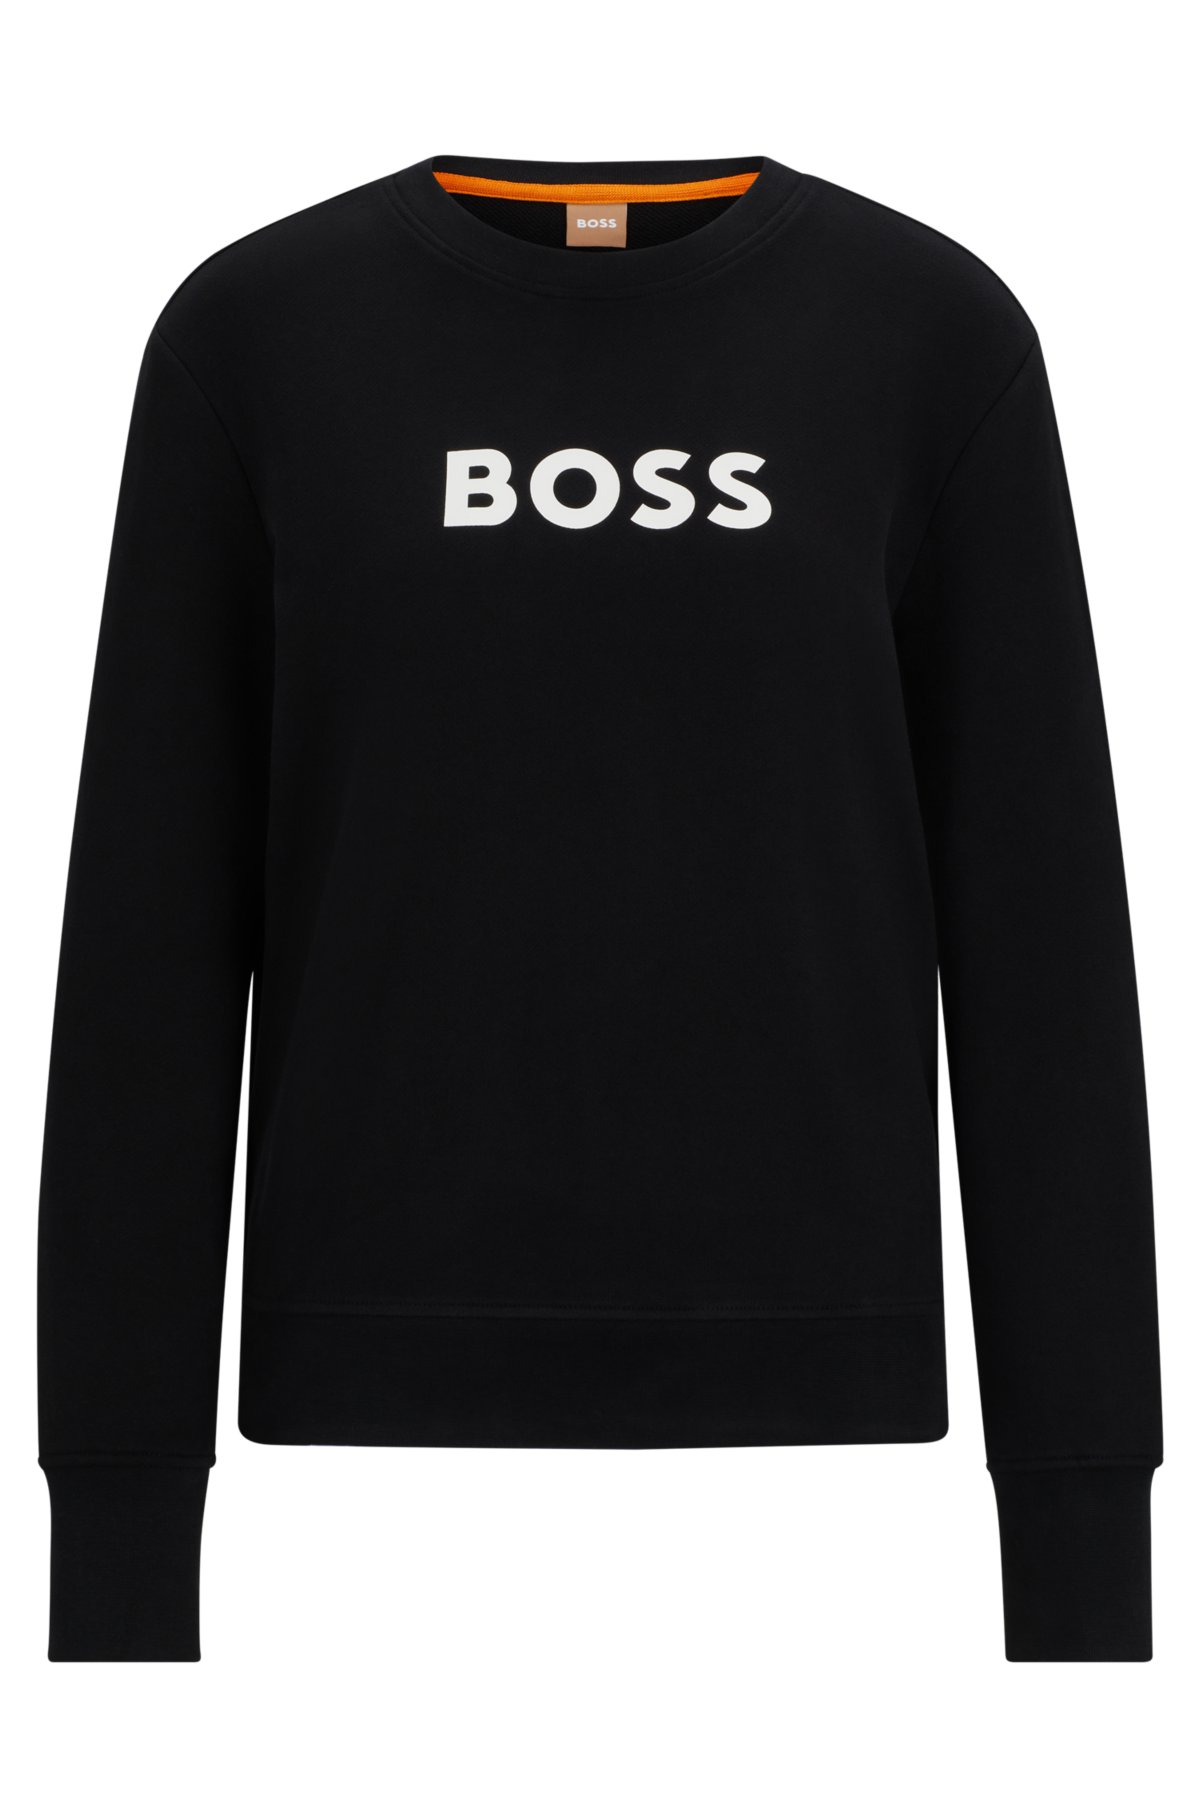 BOSS - コットンテリー スウェットシャツ コントラストロゴ